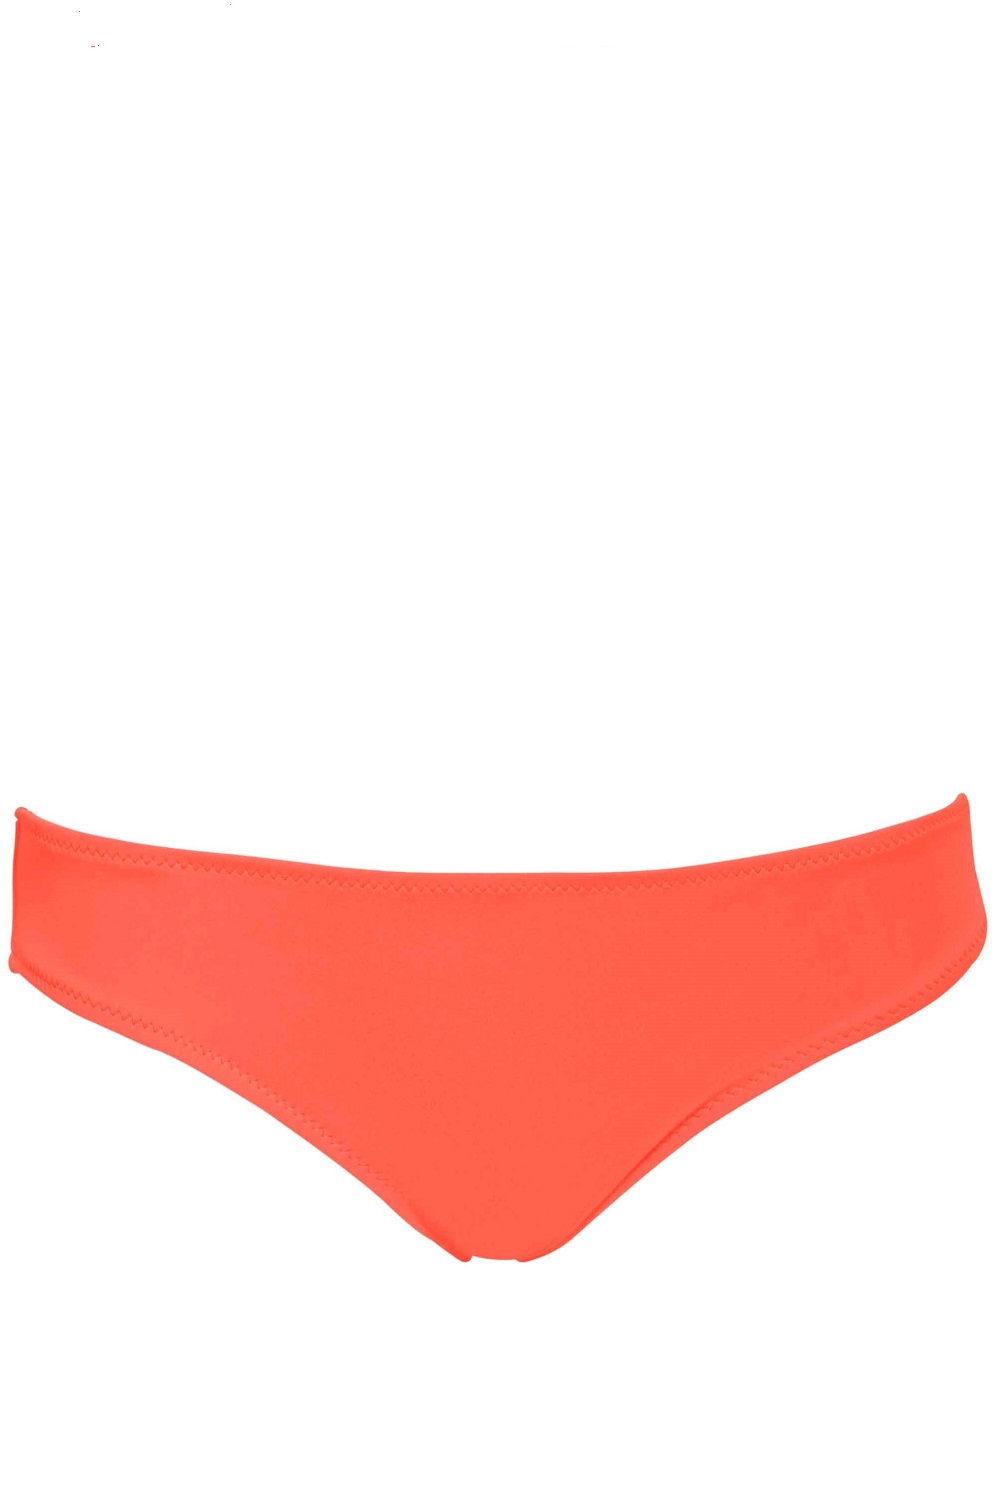 Phax Color Mix Volledig Broekje Neon Orange-extralarge-Neon Oranje